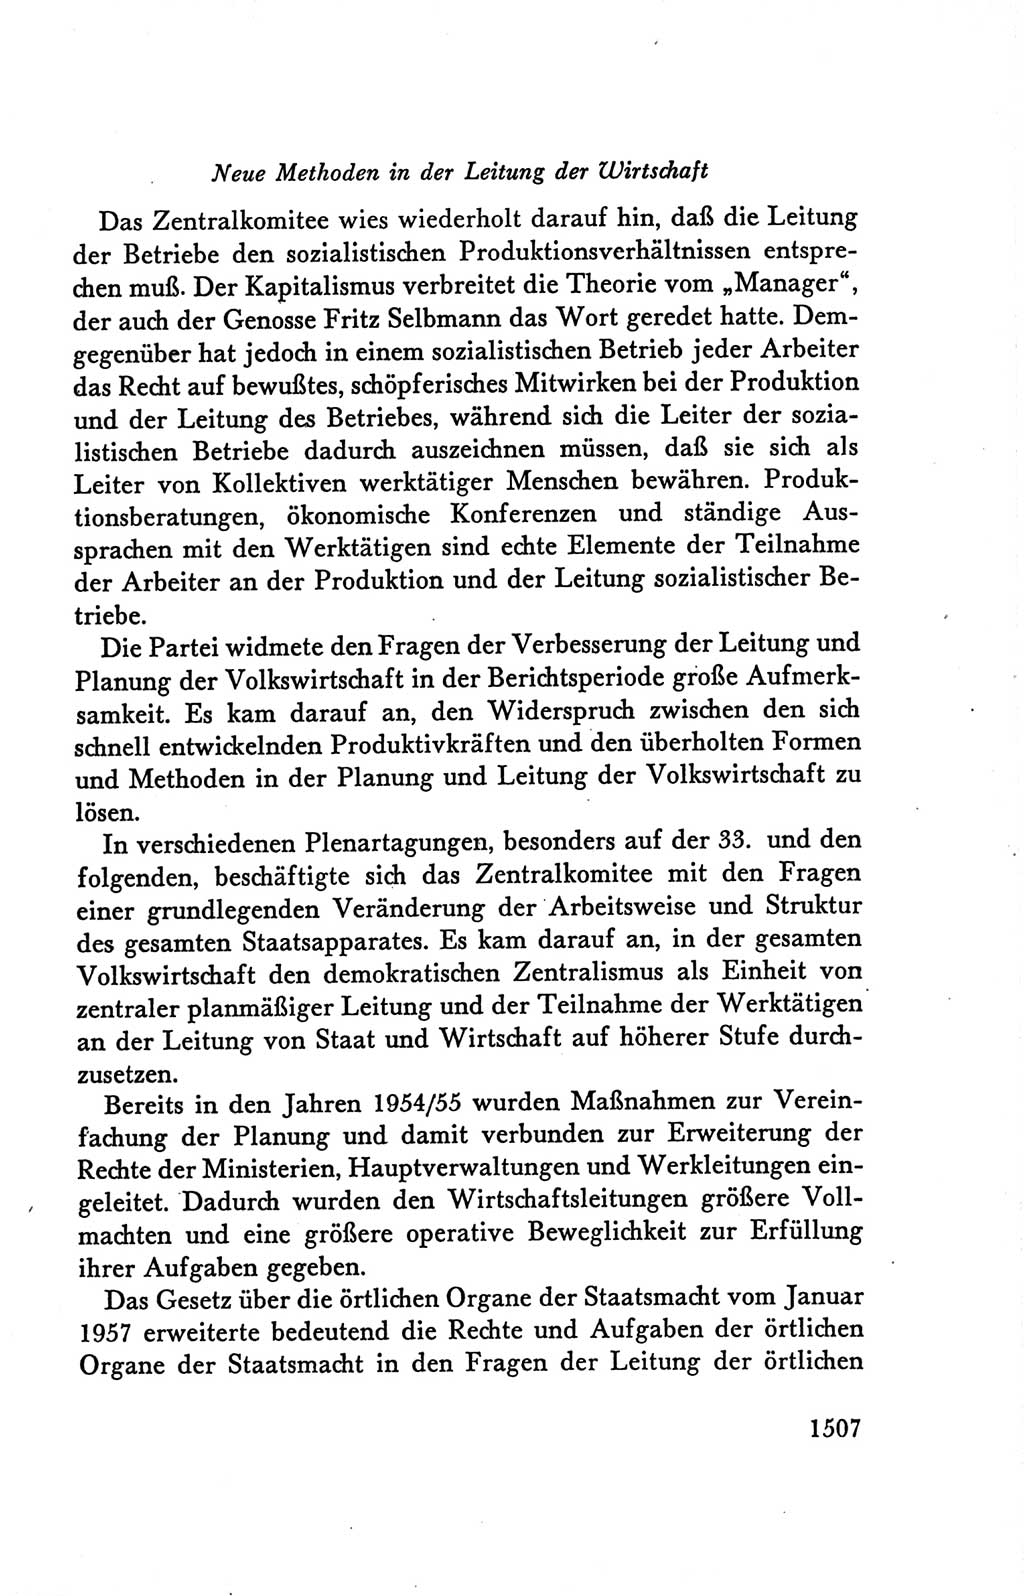 Protokoll der Verhandlungen des Ⅴ. Parteitages der Sozialistischen Einheitspartei Deutschlands (SED) [Deutsche Demokratische Republik (DDR)] 1958, Seite 1507